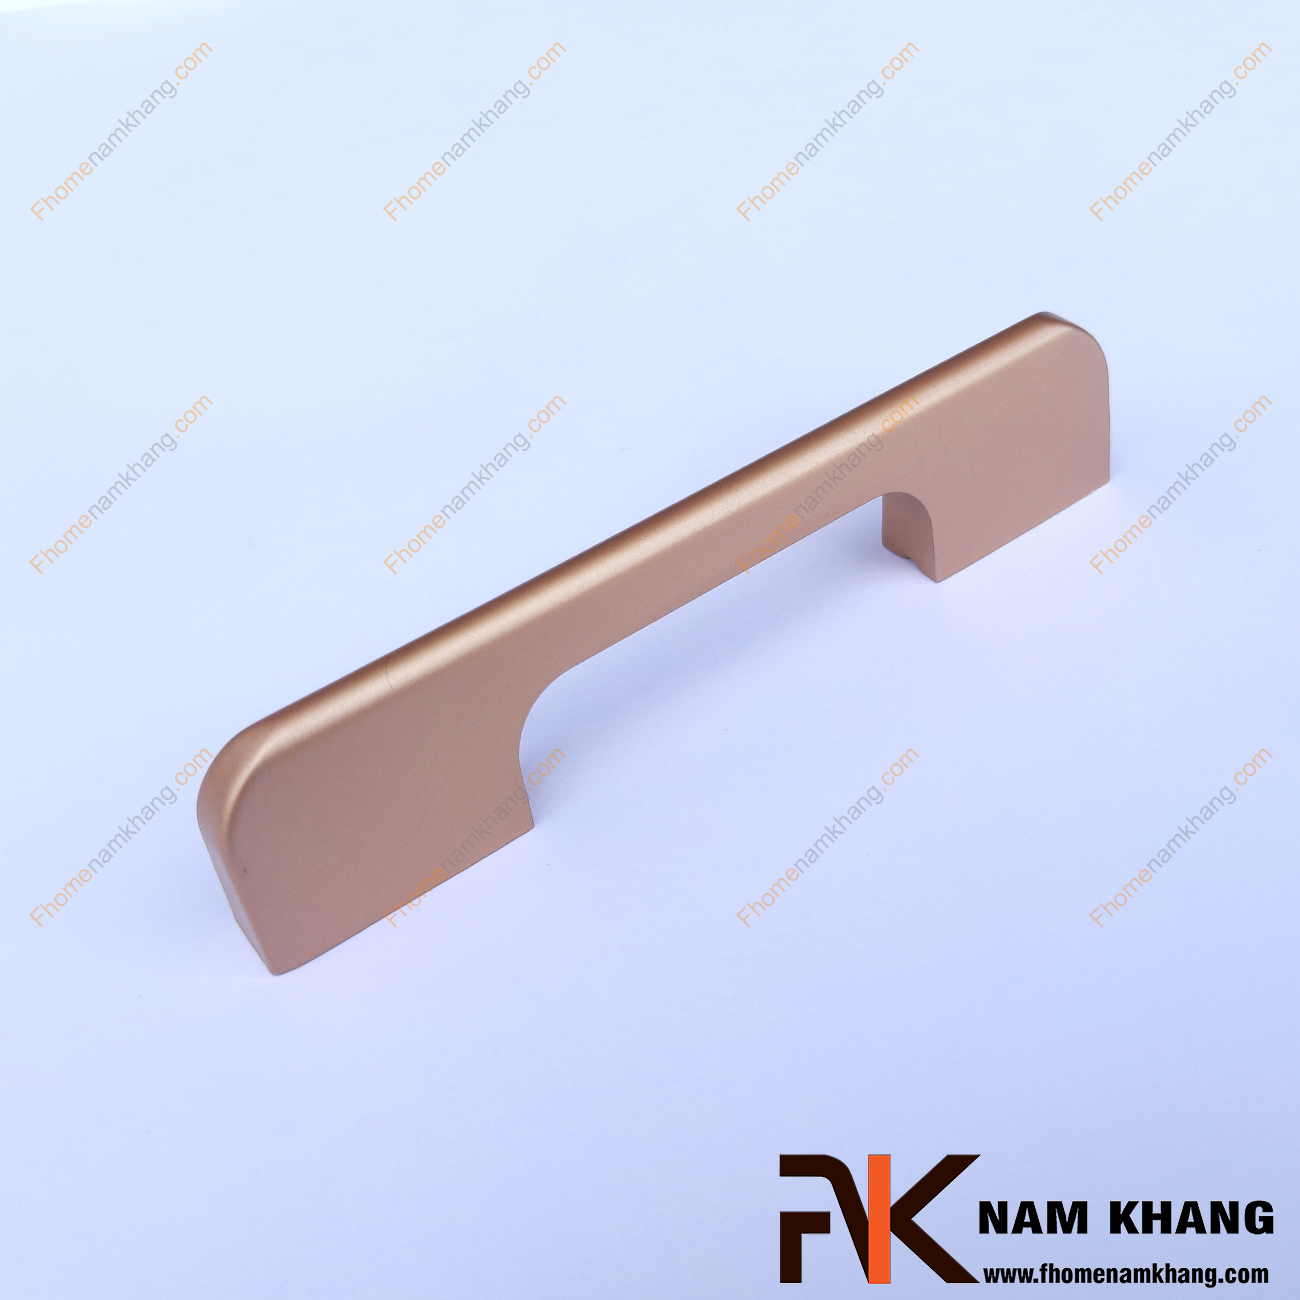 Tay nắm tủ dạng thanh trơn màu vàng đồng NK260-NV là một dòng tay nắm tủ theo bộ với nhiều kích thước được sử dụng trên một hoặc nhiều loại phong cách tủ khác nhau tùy nhu cầu thiết kế.